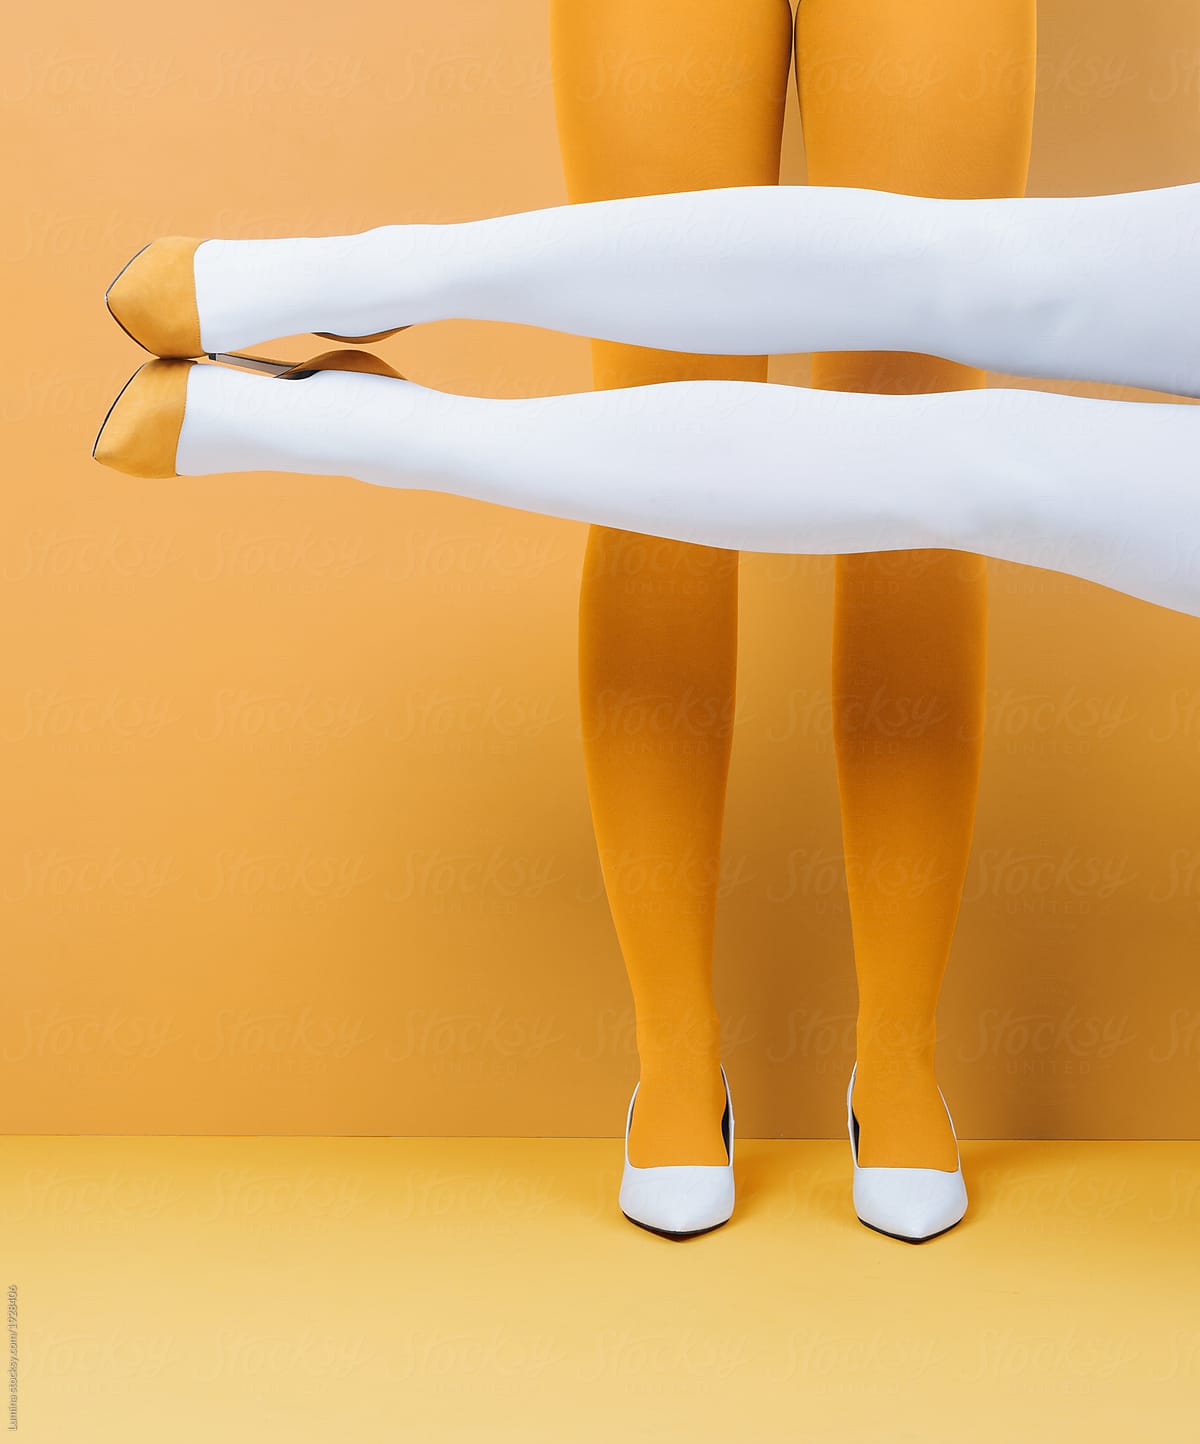 Women's Legs in Stiletto